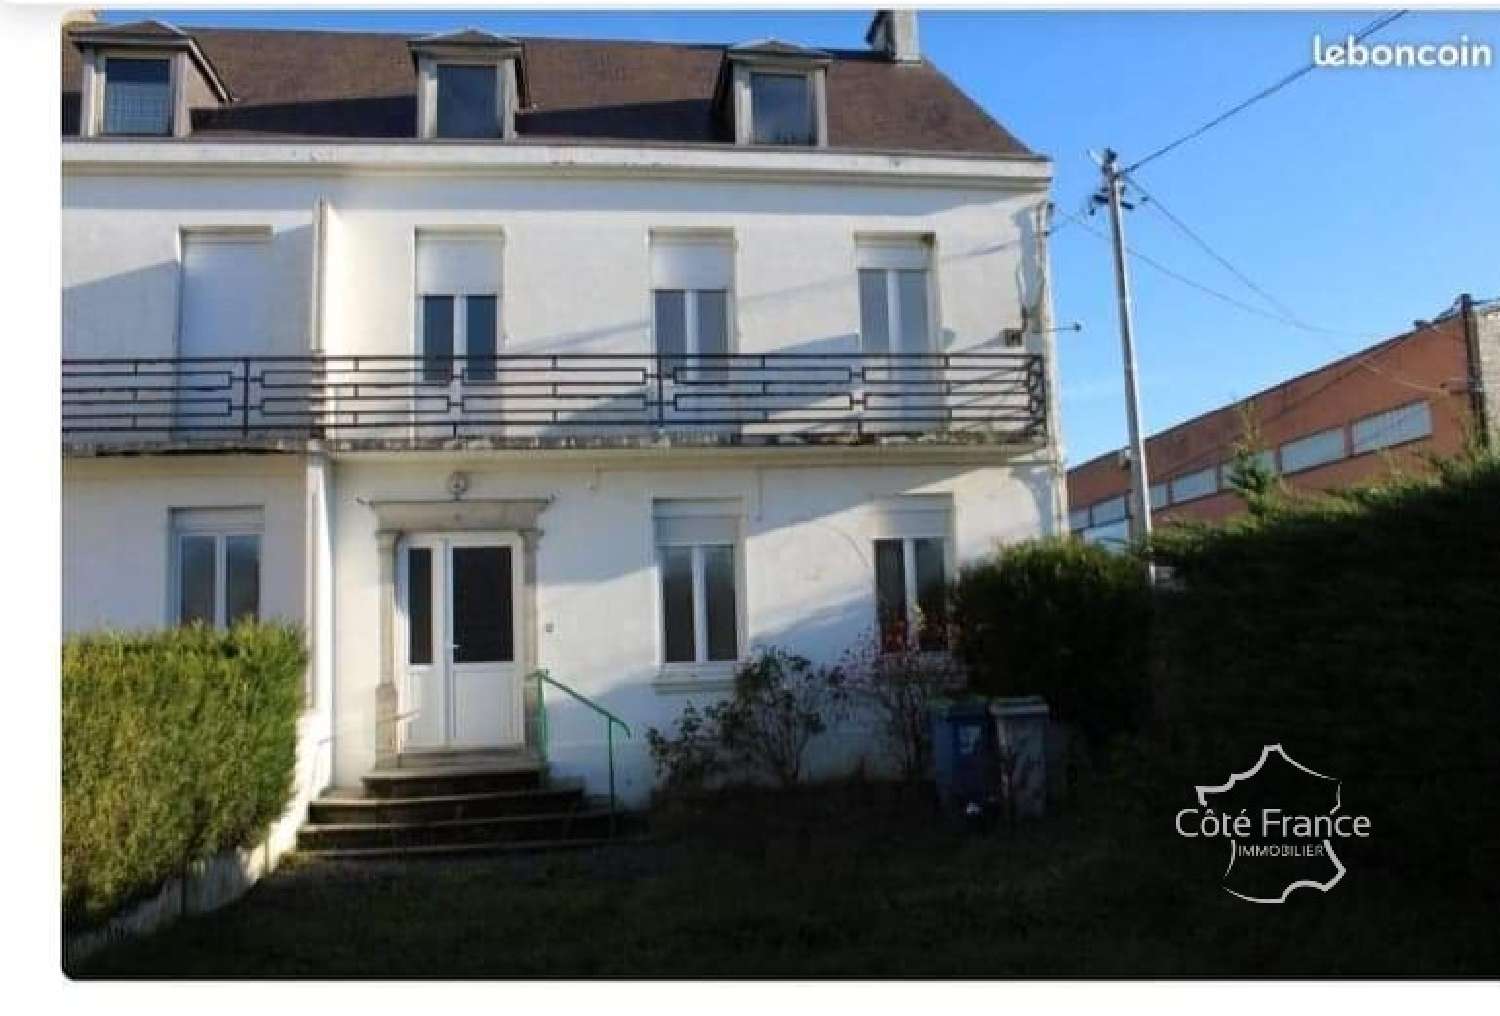  for sale house Buironfosse Aisne 1